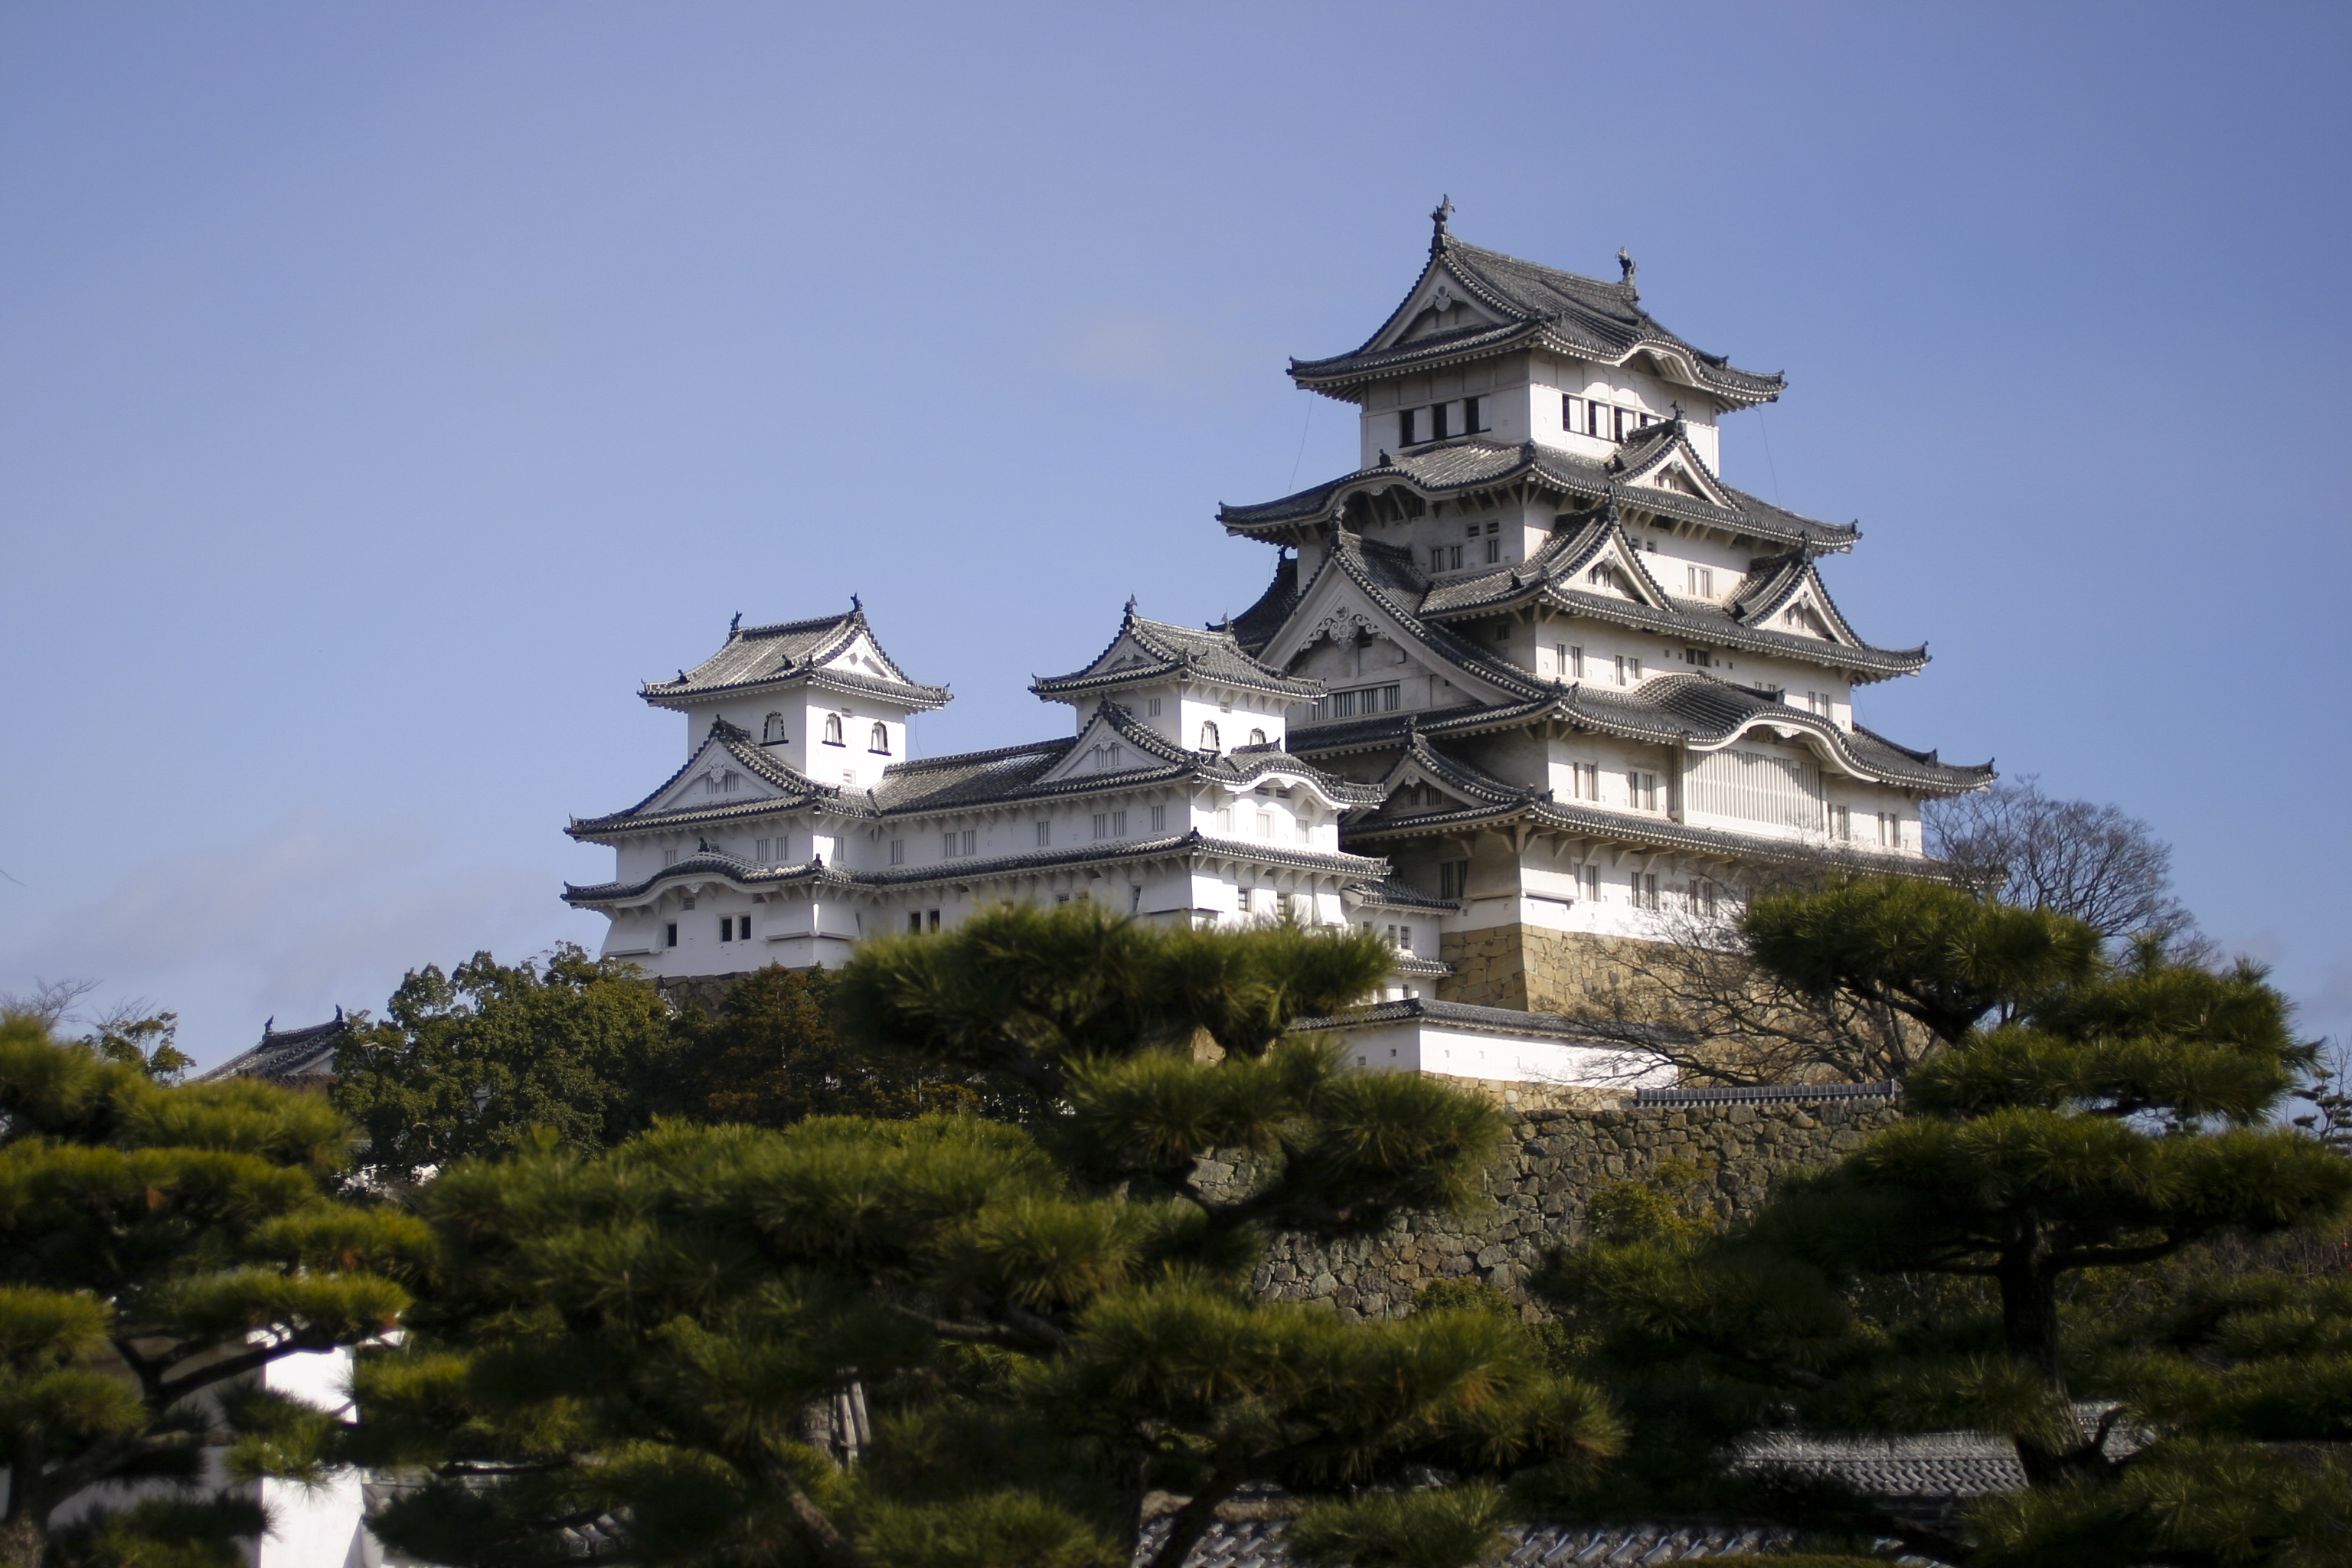 フリー画像 人工風景 建造物 建築物 城 宮殿 姫路城 世界遺産 ユネスコ 日本風景 フリー素材 画像素材なら 無料 フリー写真素材のフリーフォト